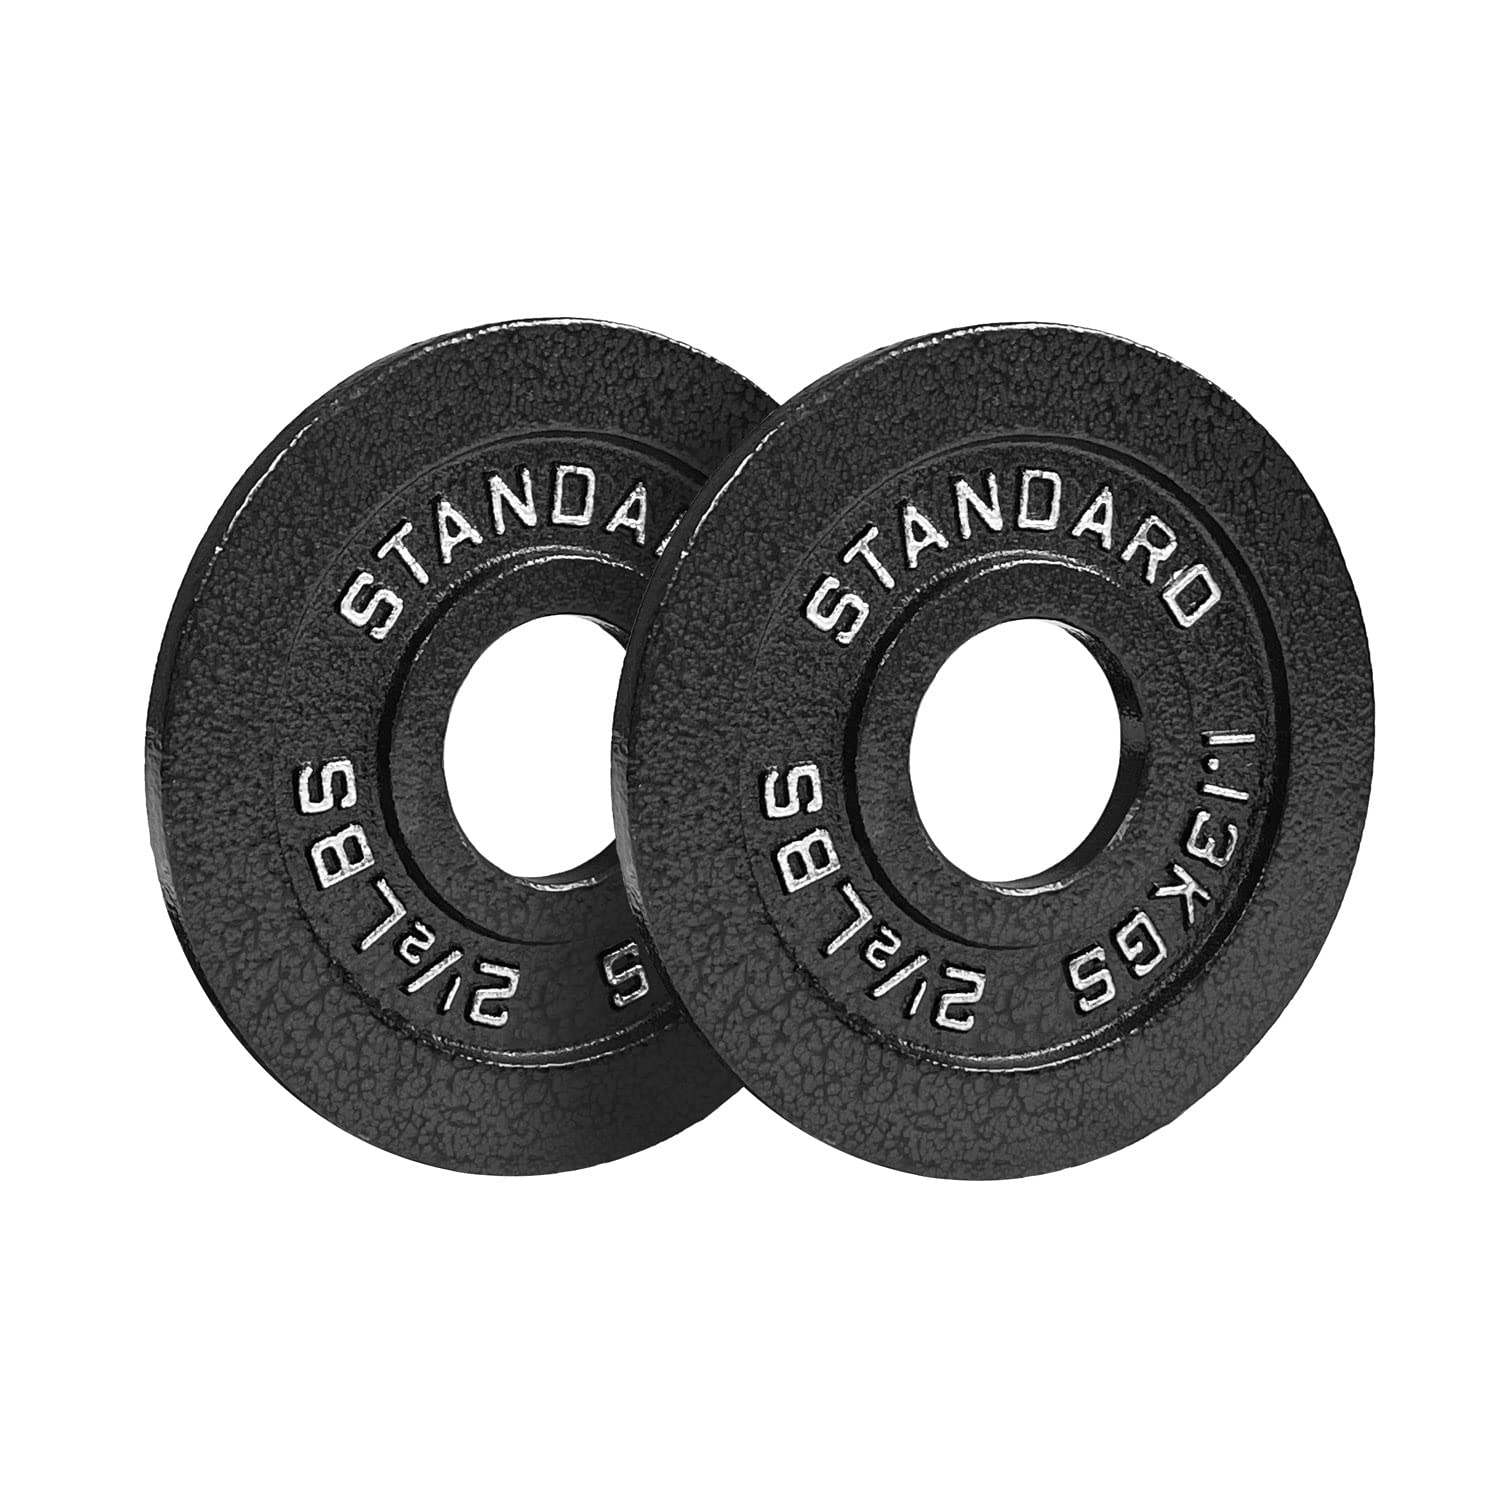 Steel Olympic Plates 245lb Set - Olympic Standard Premium Coated 2.5lb, 5lb, 10lb, 25lb, 35lb, 45lb Pairs